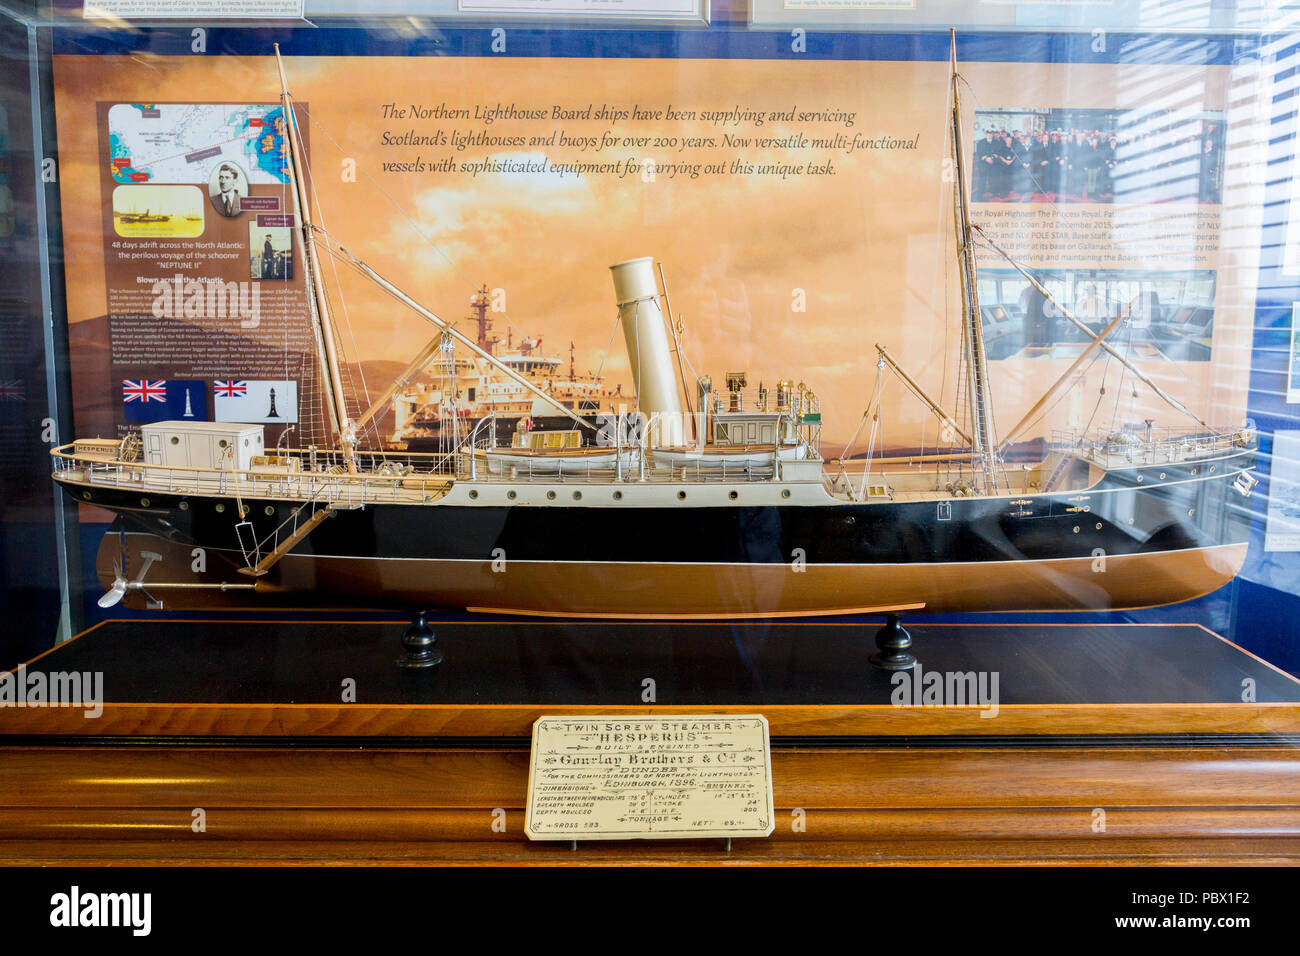 Ein Modell des Northern Lighthouse Board Schiff "Hesperus" in einer Vitrine im Museum in Oban, Argyll und Bute, Schottland, UK angezeigt Stockfoto